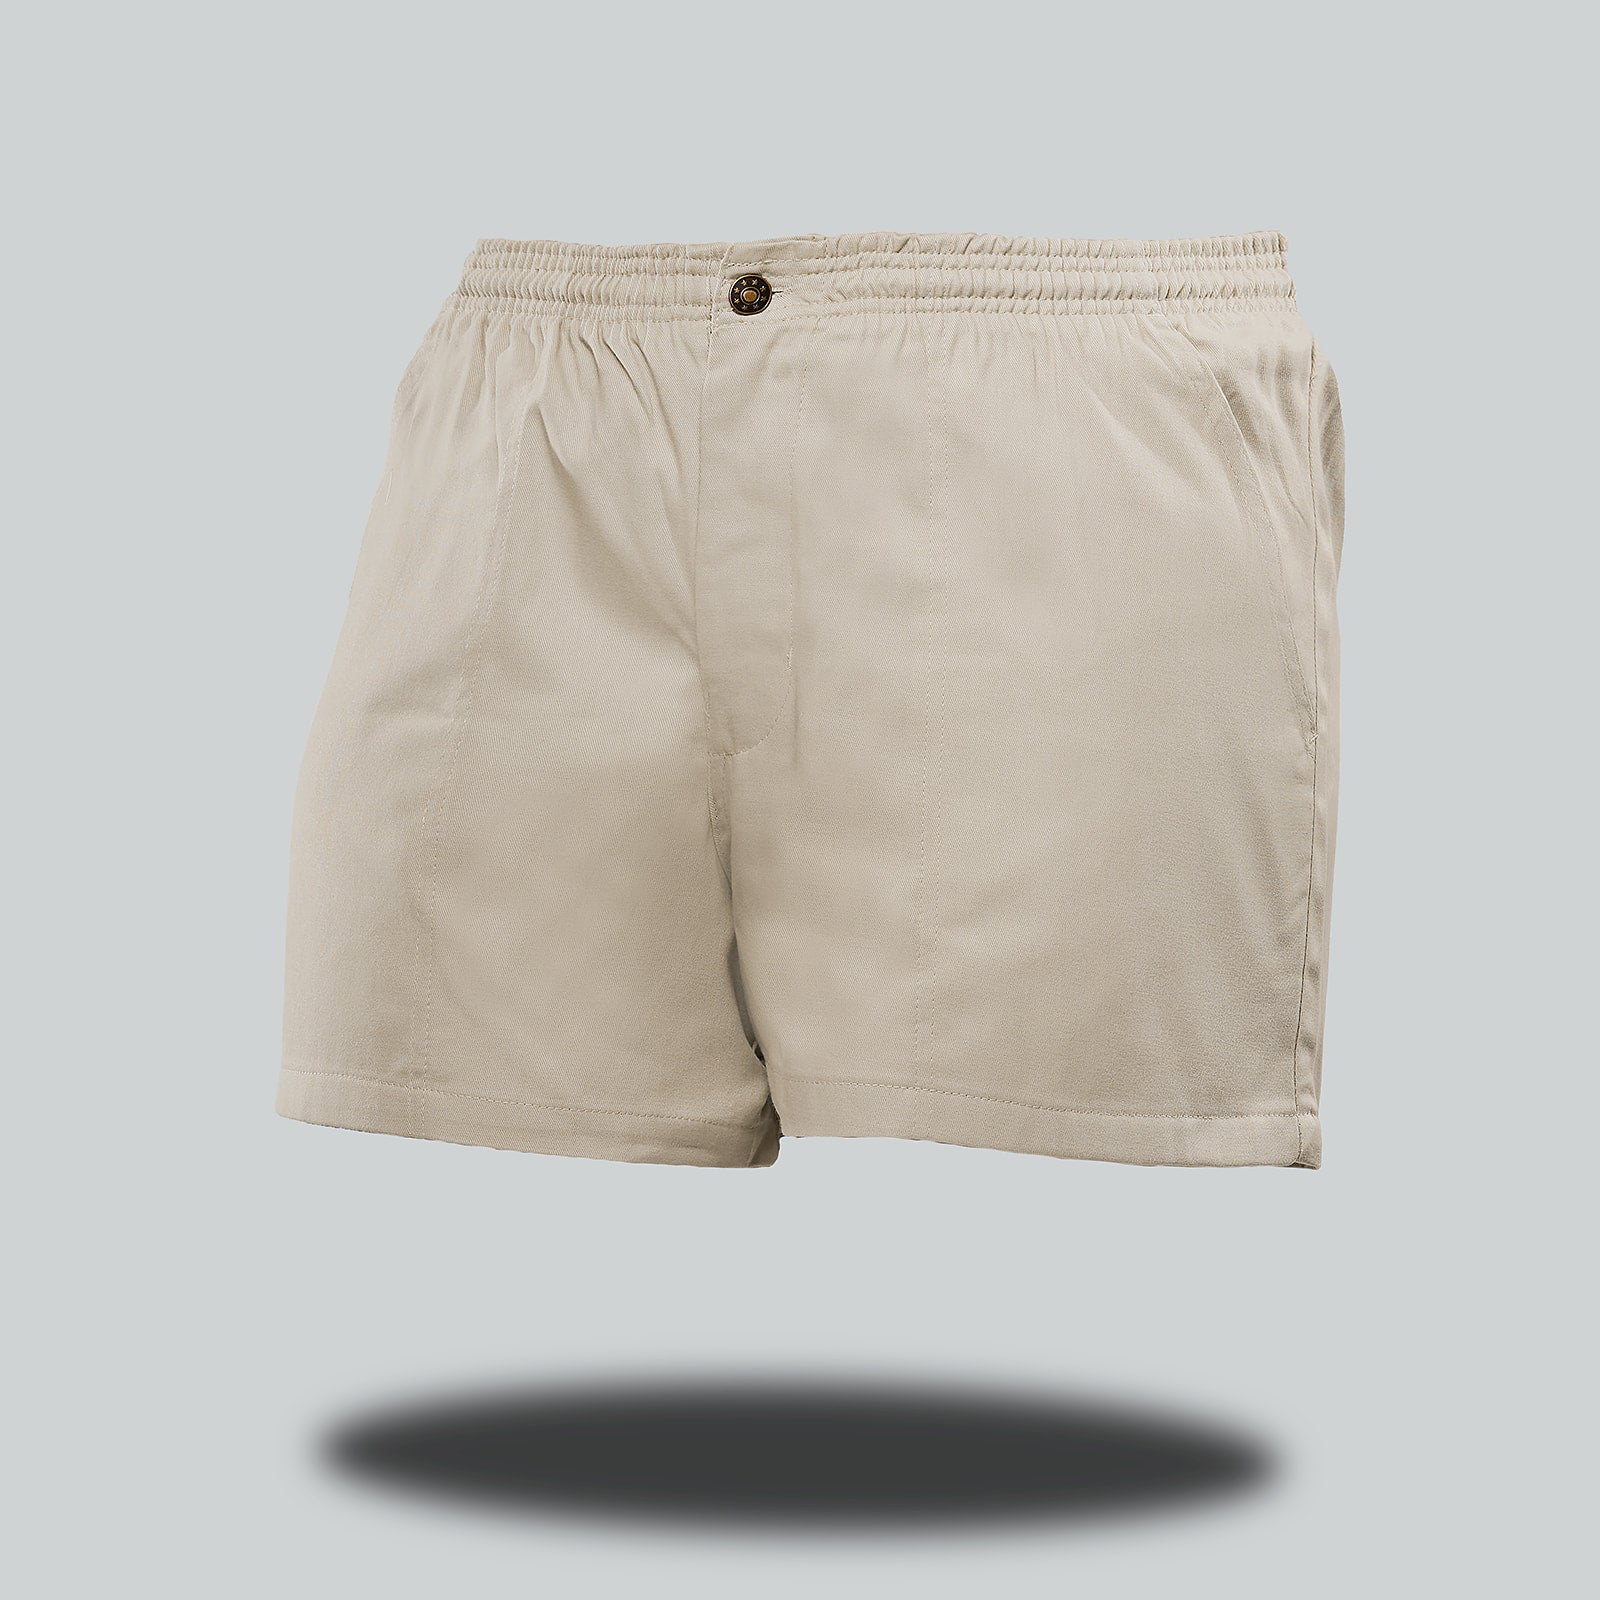 Kruger Boxer Shorts - Men's